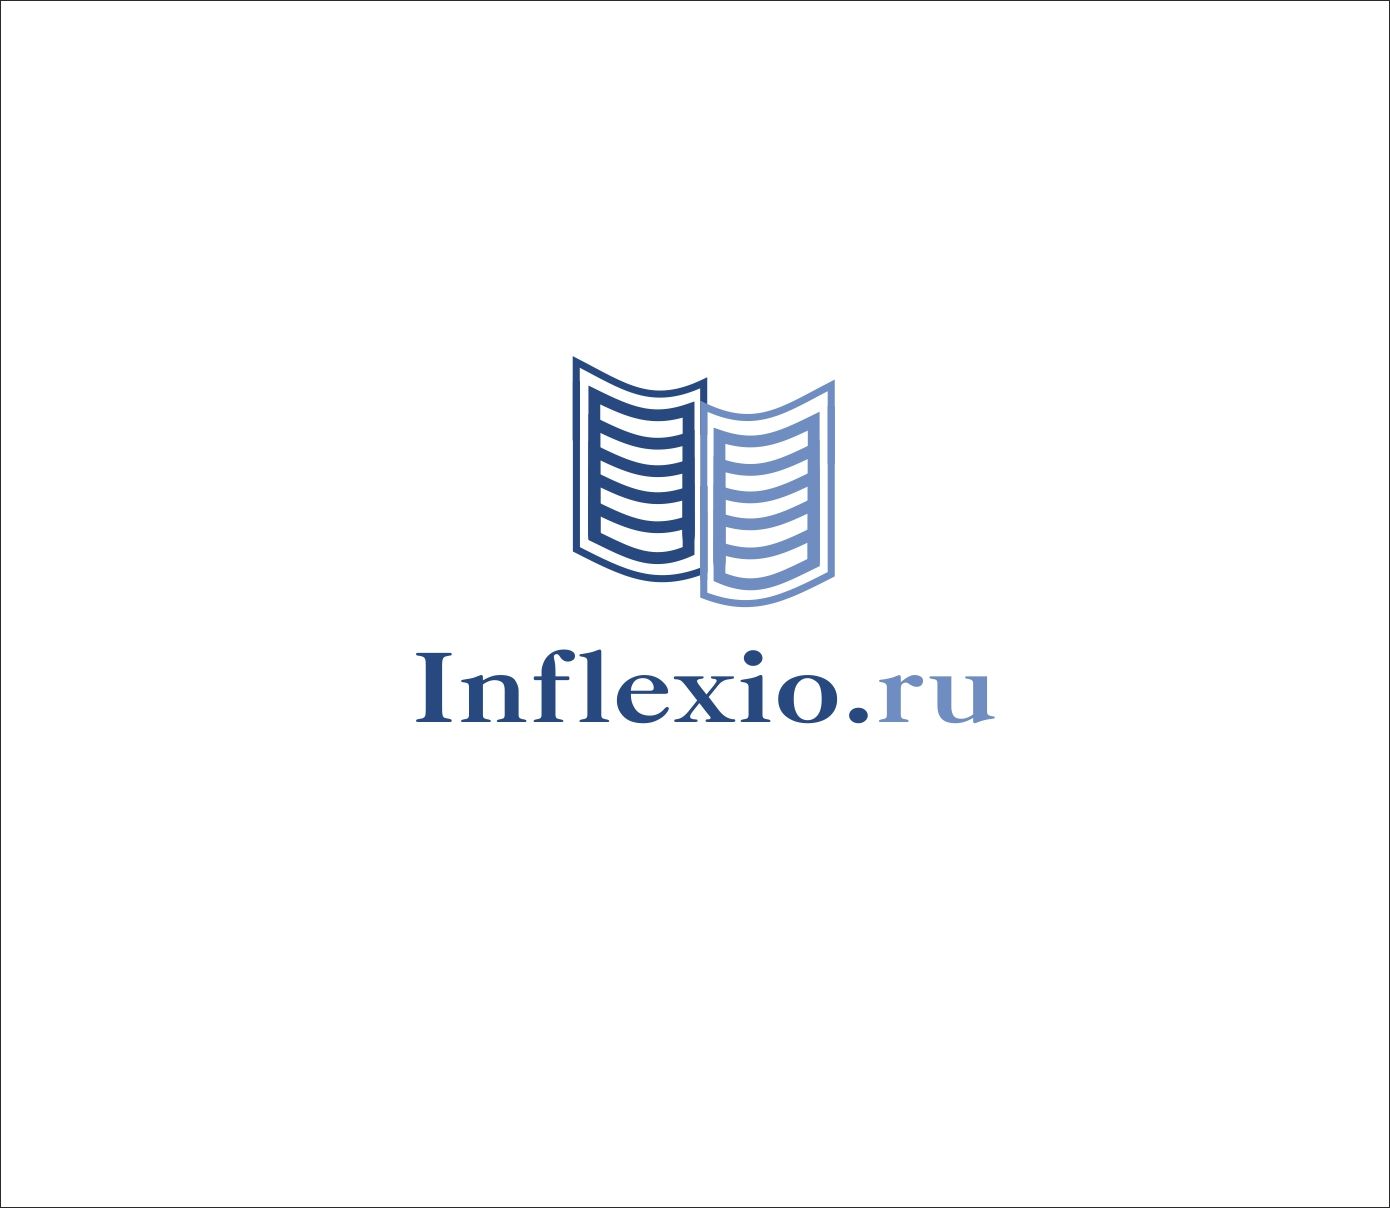 Логотип для Inflexio.ru - дизайнер art-valeri